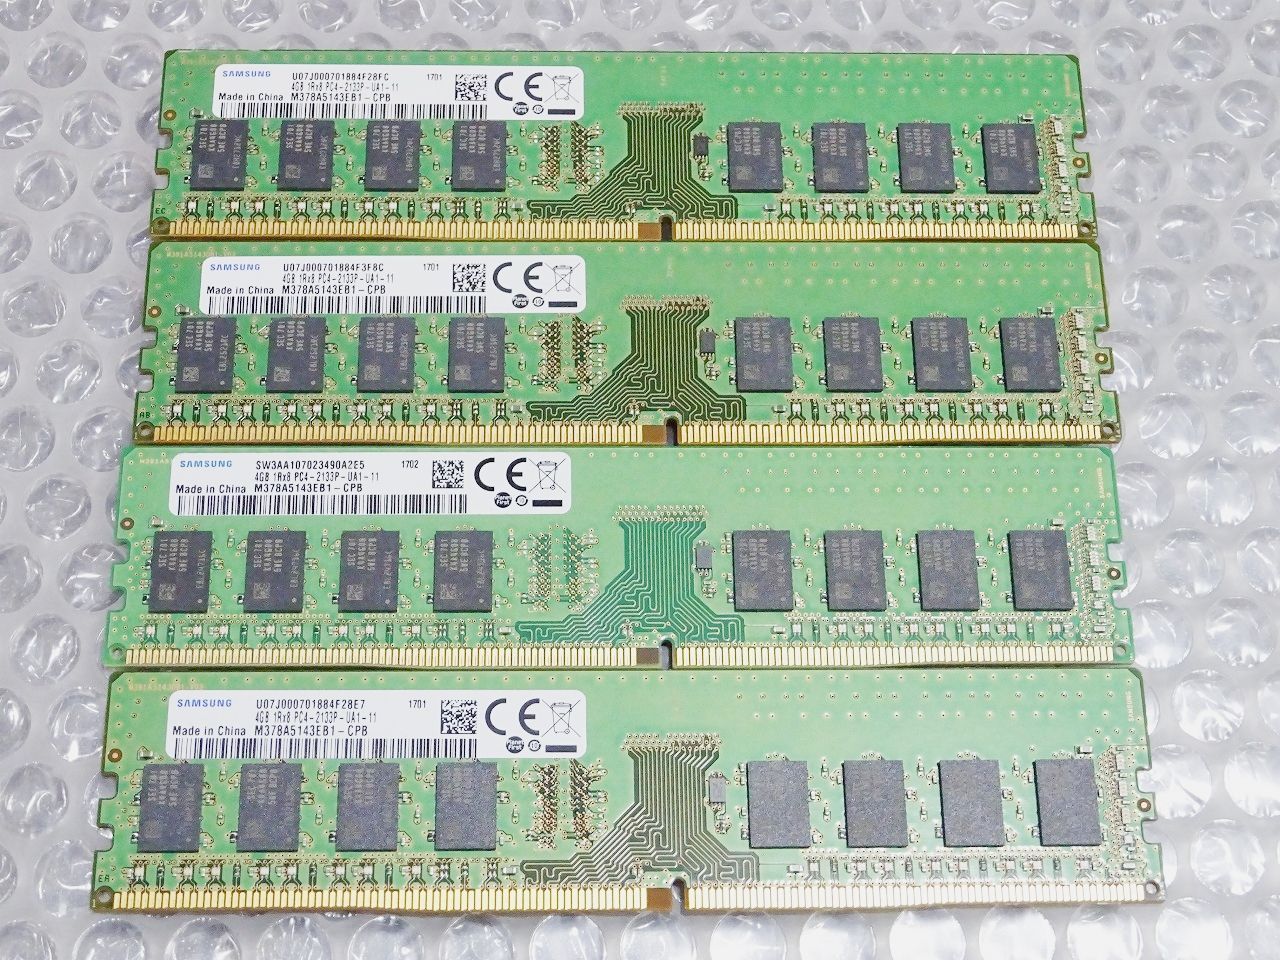 デスクトップPC用 メモリ 4GB × 4 計 16GB - メモリー